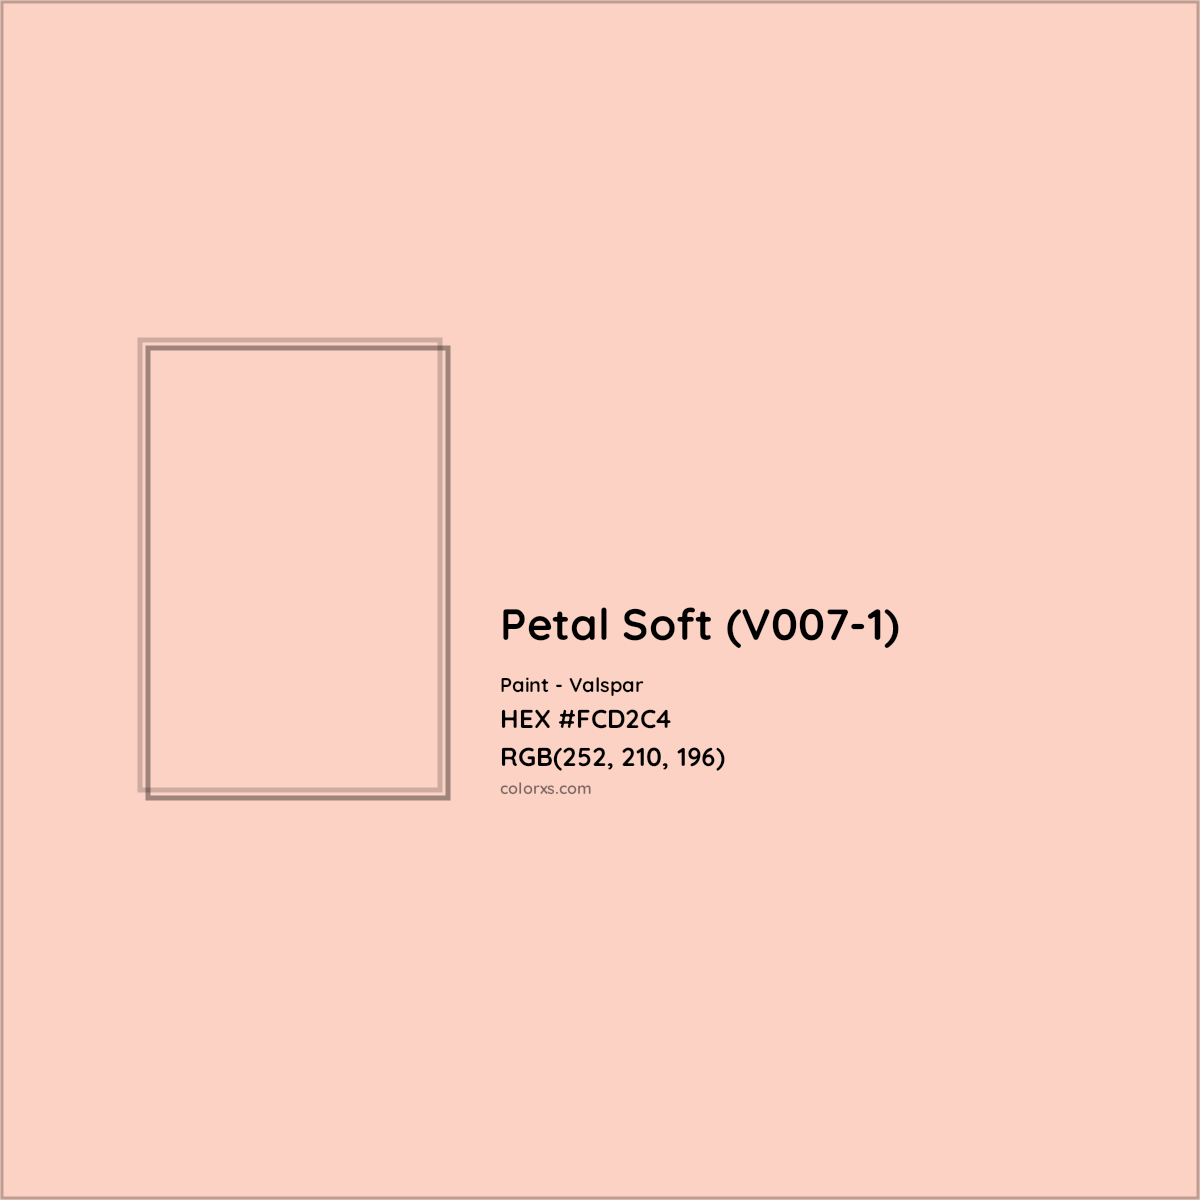 HEX #FCD2C4 Petal Soft (V007-1) Paint Valspar - Color Code